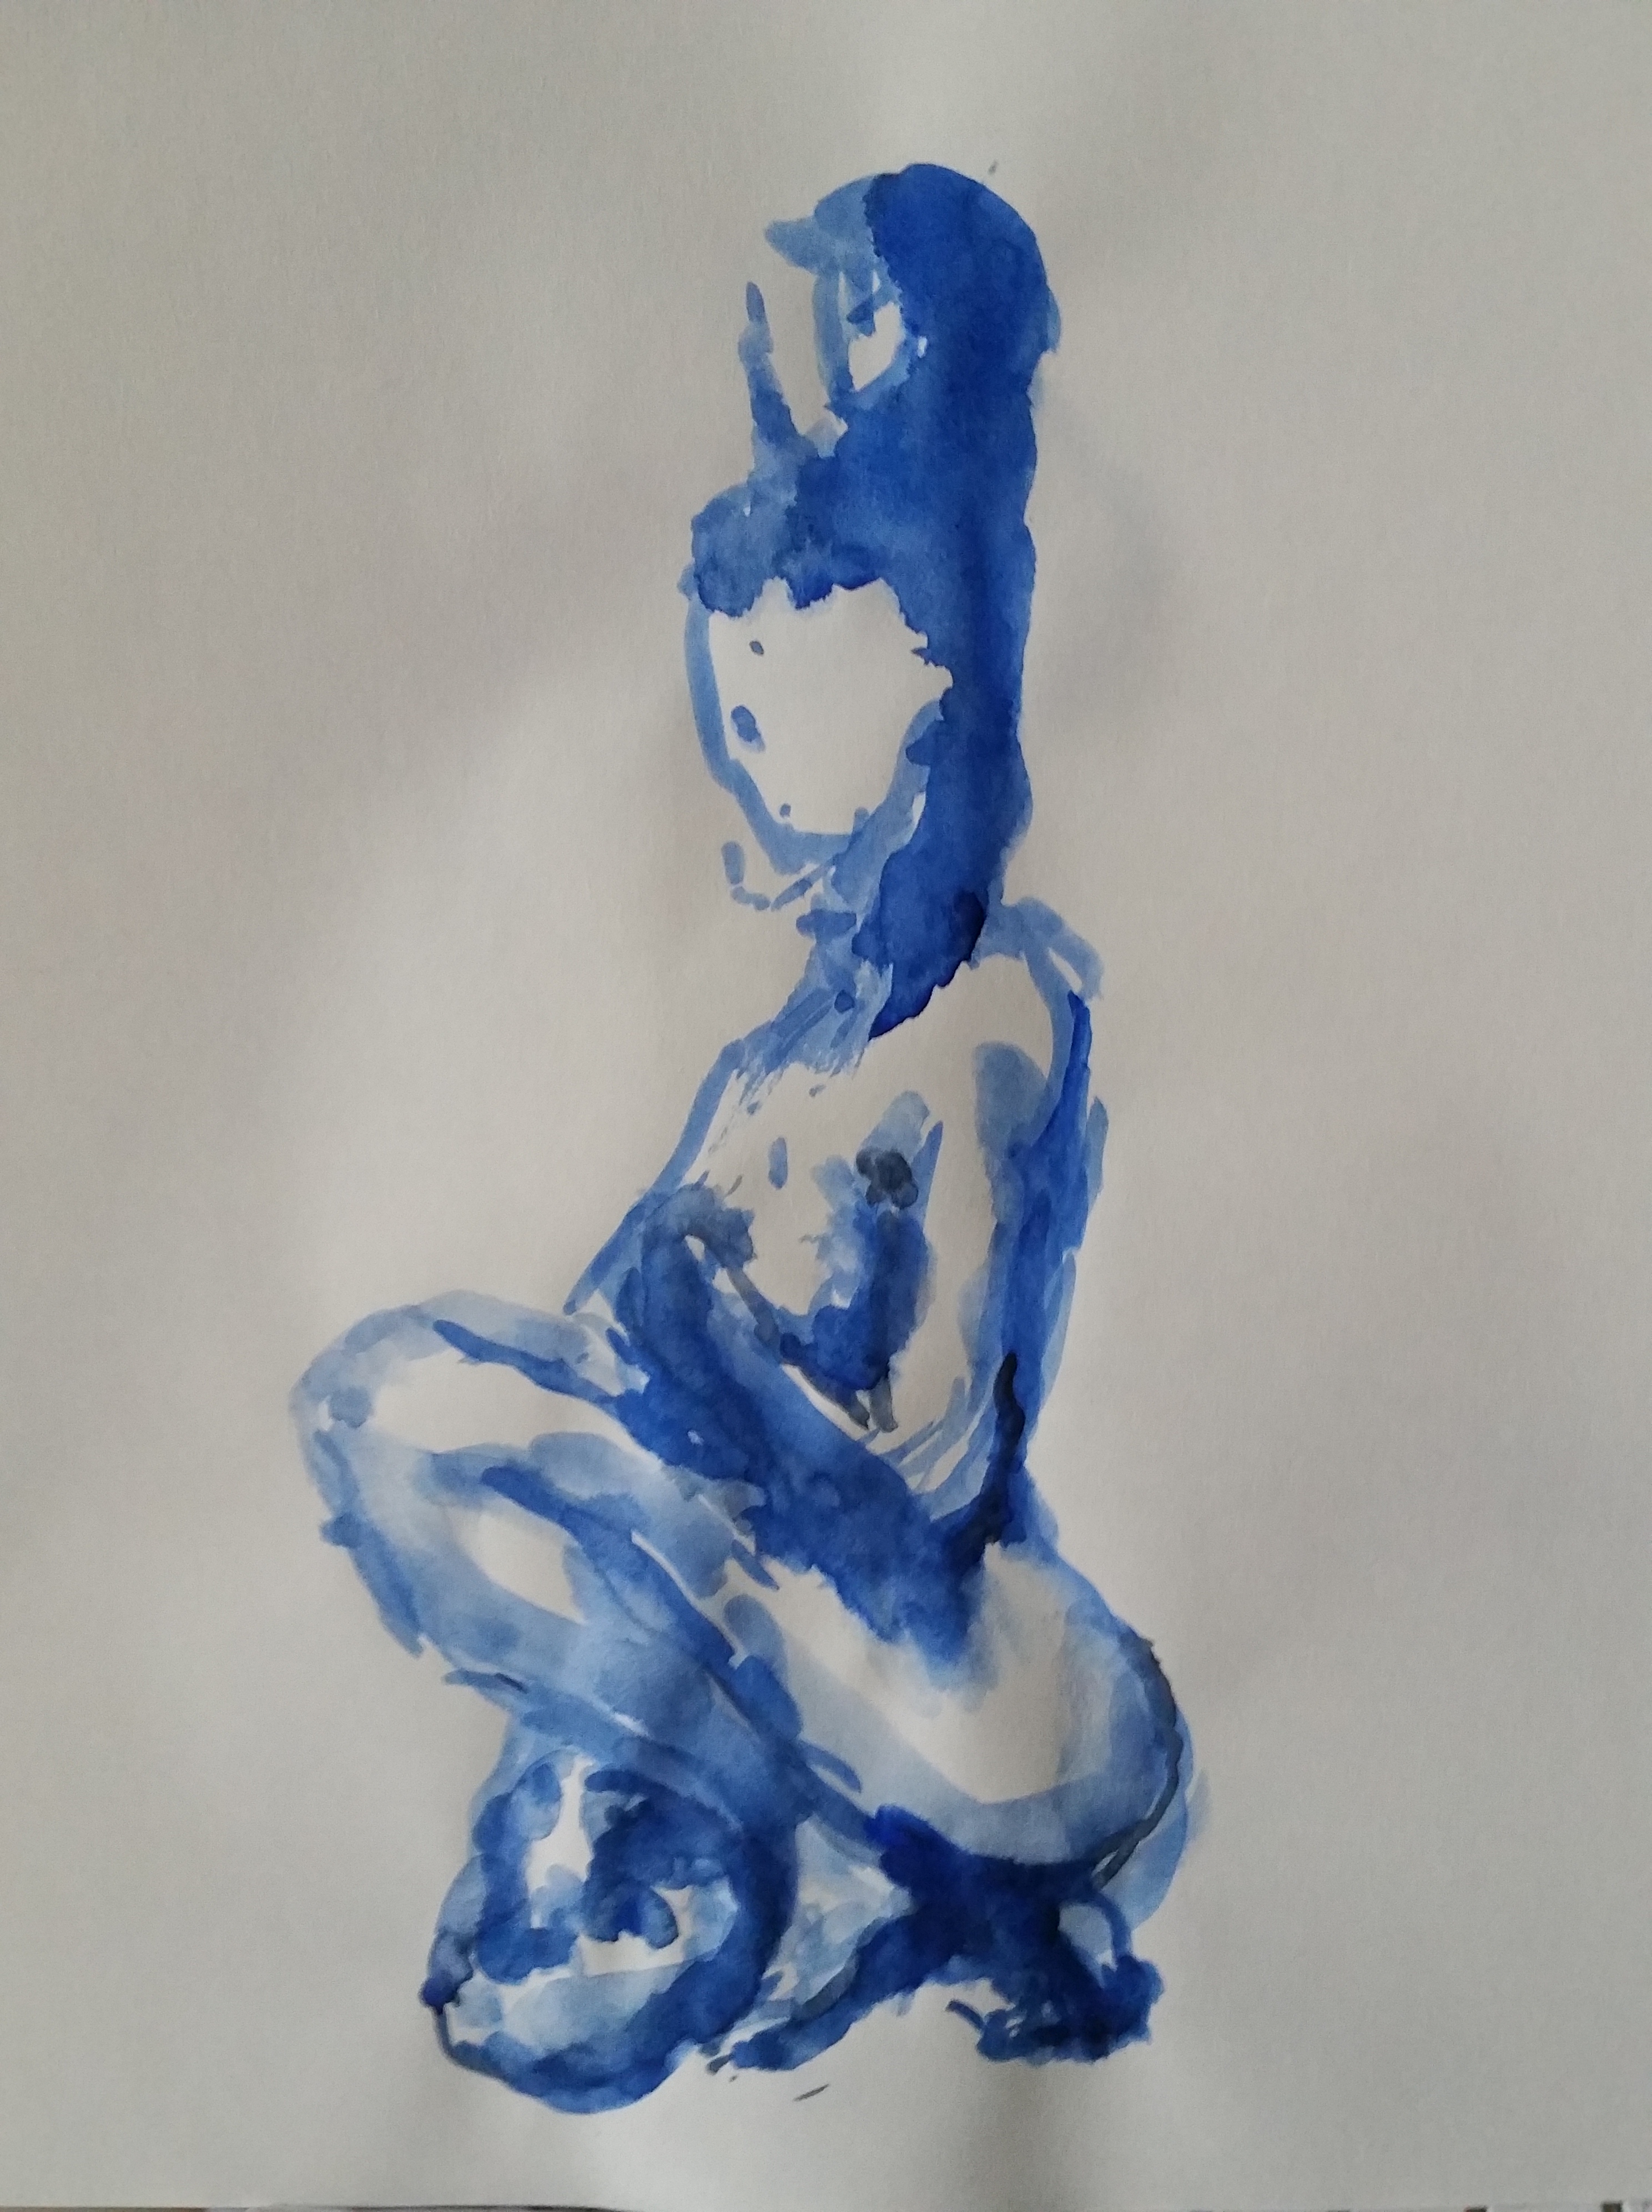  Aquarelle bleue dessin assis femme sur papier  cours de dessin 